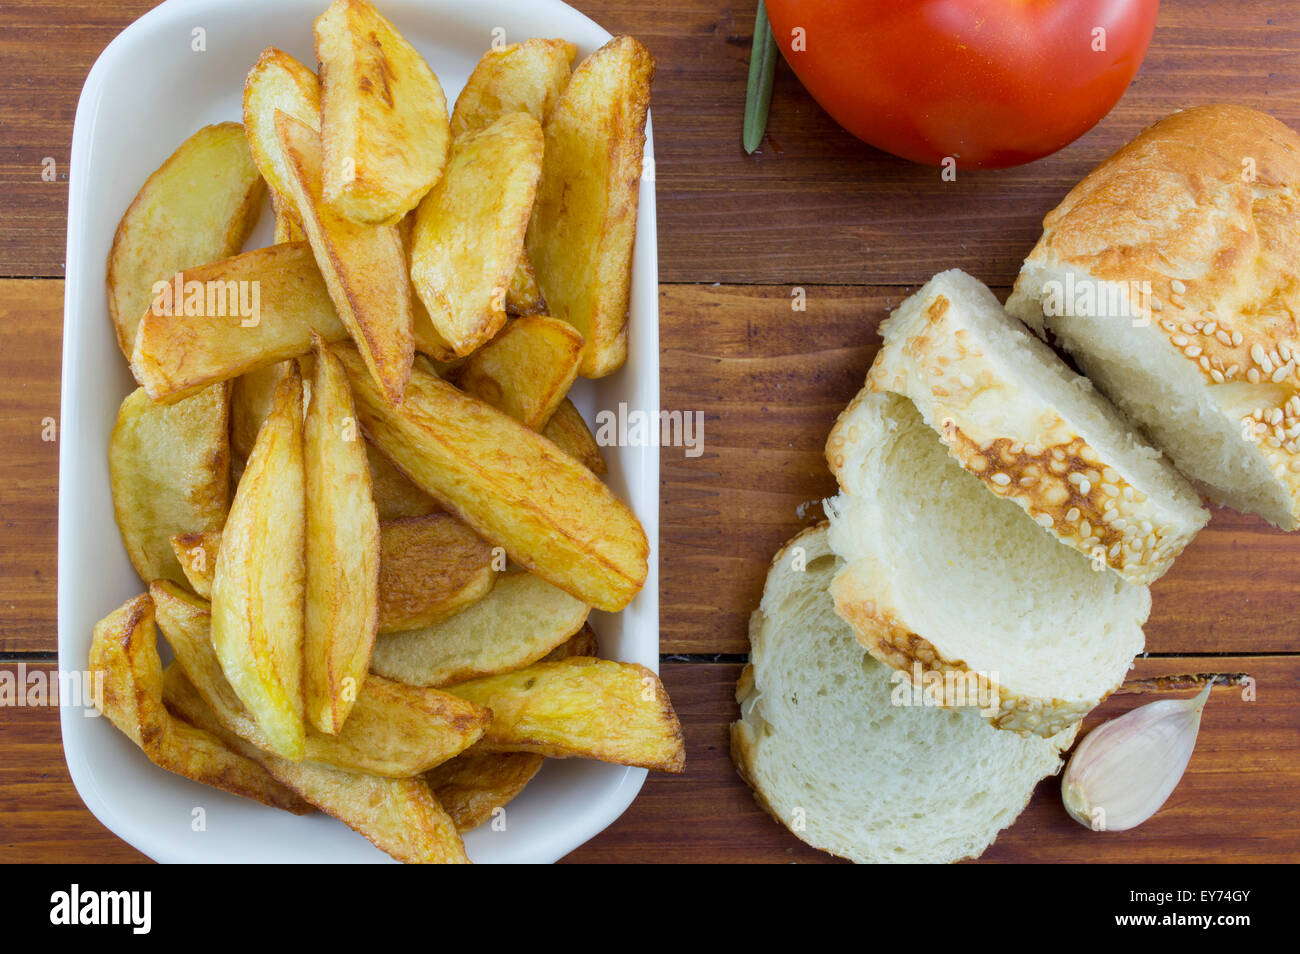 Des frites sur une assiette décorée avec des tranches de pain, l'oignon et une tomate Banque D'Images